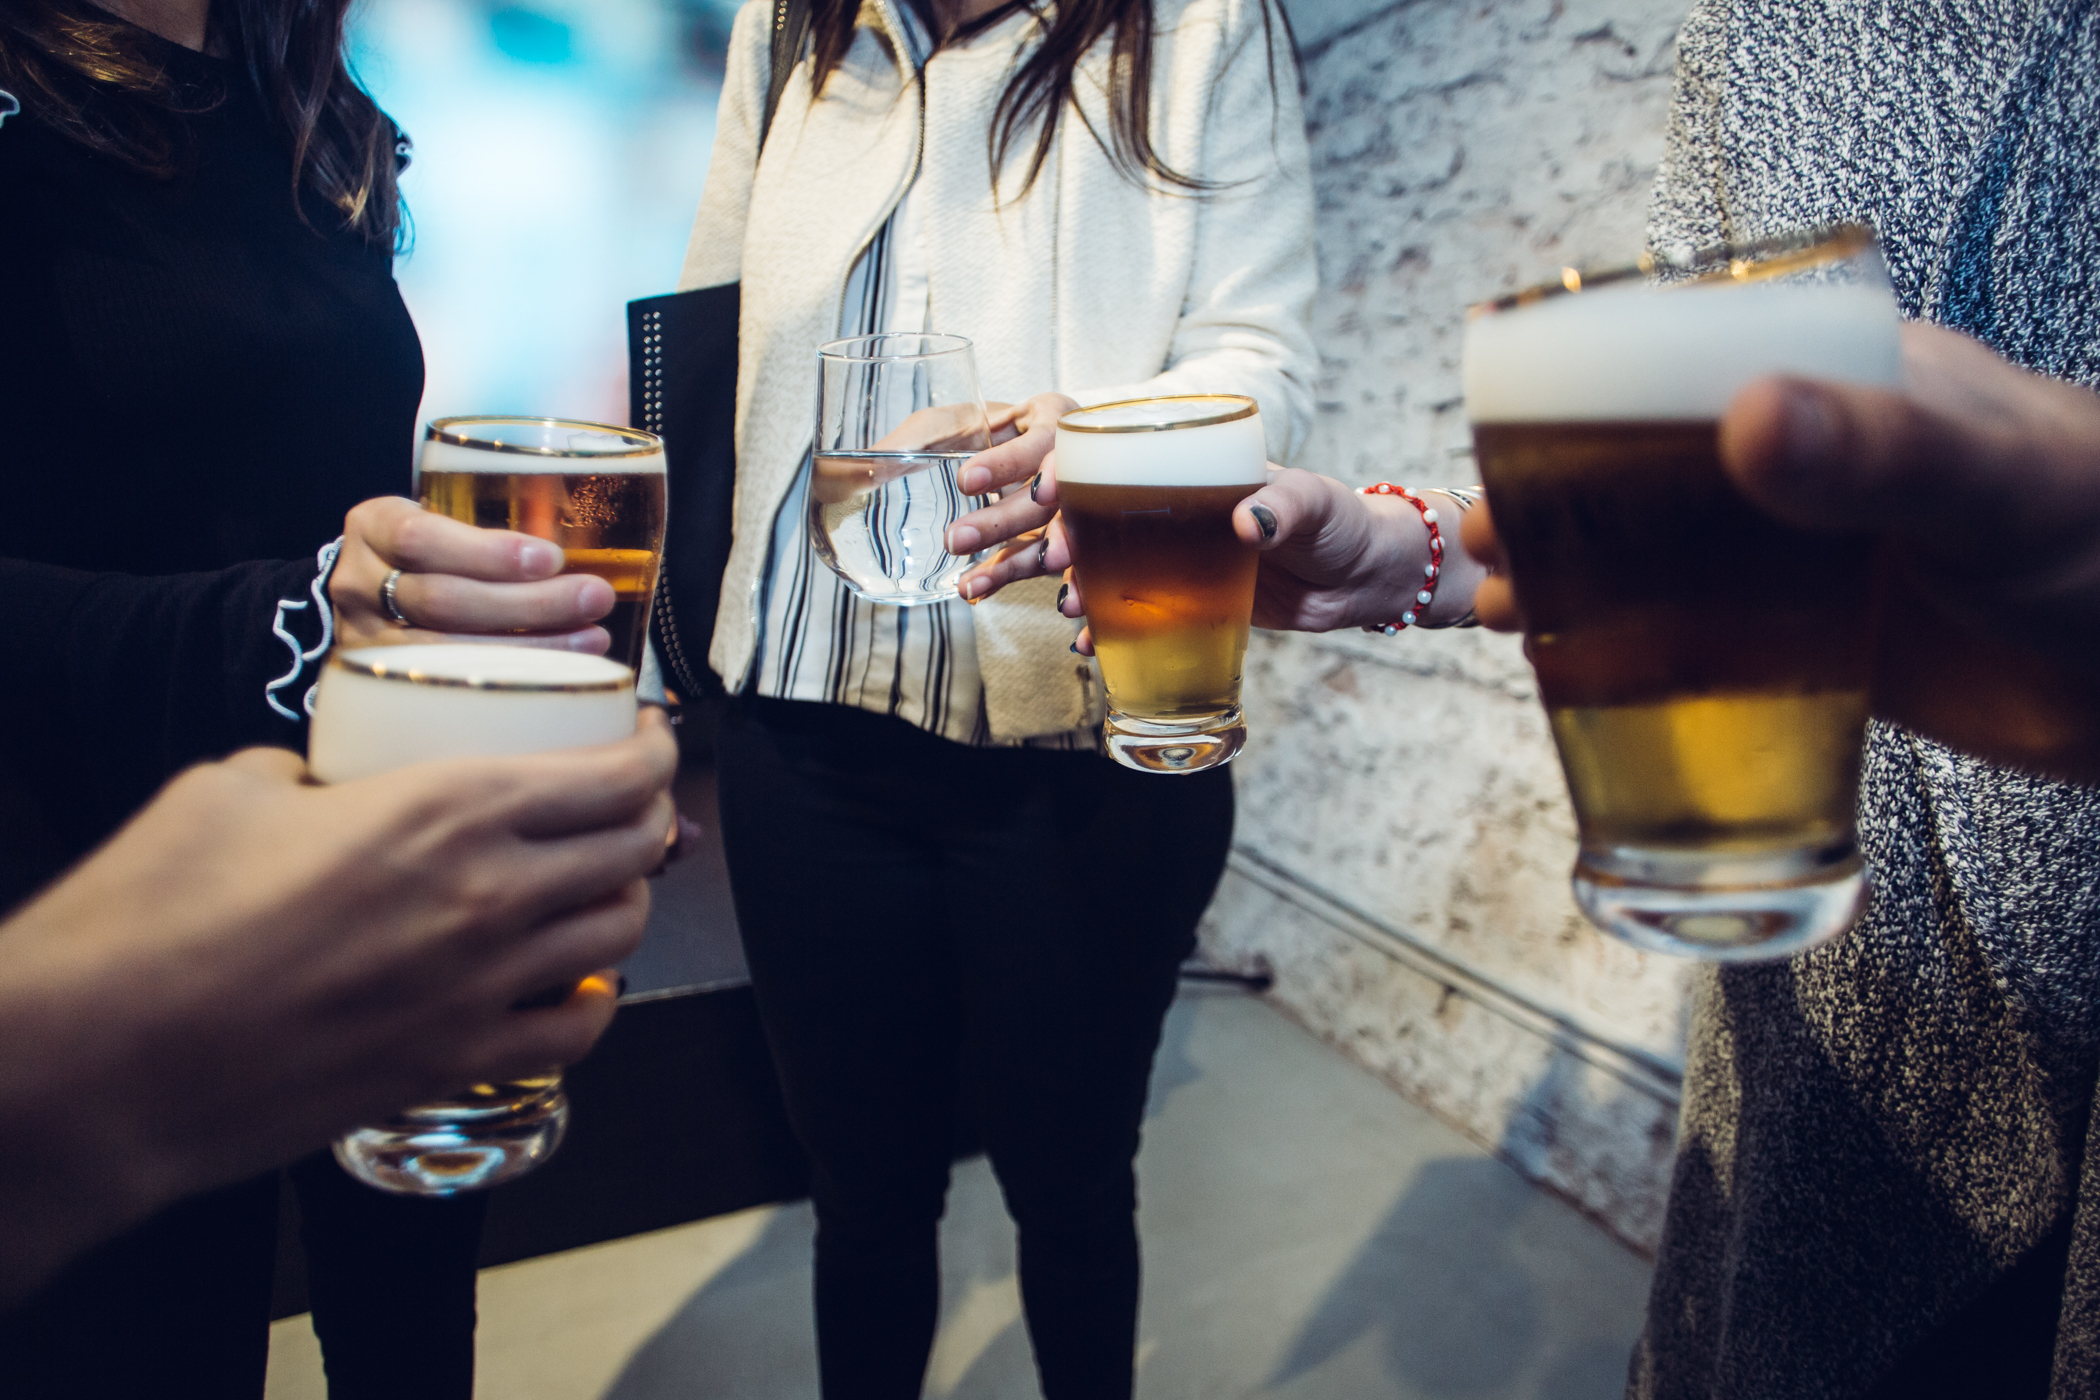 Las cerveceras buscan concientizar sobre los riesgos del consumo de alcohol